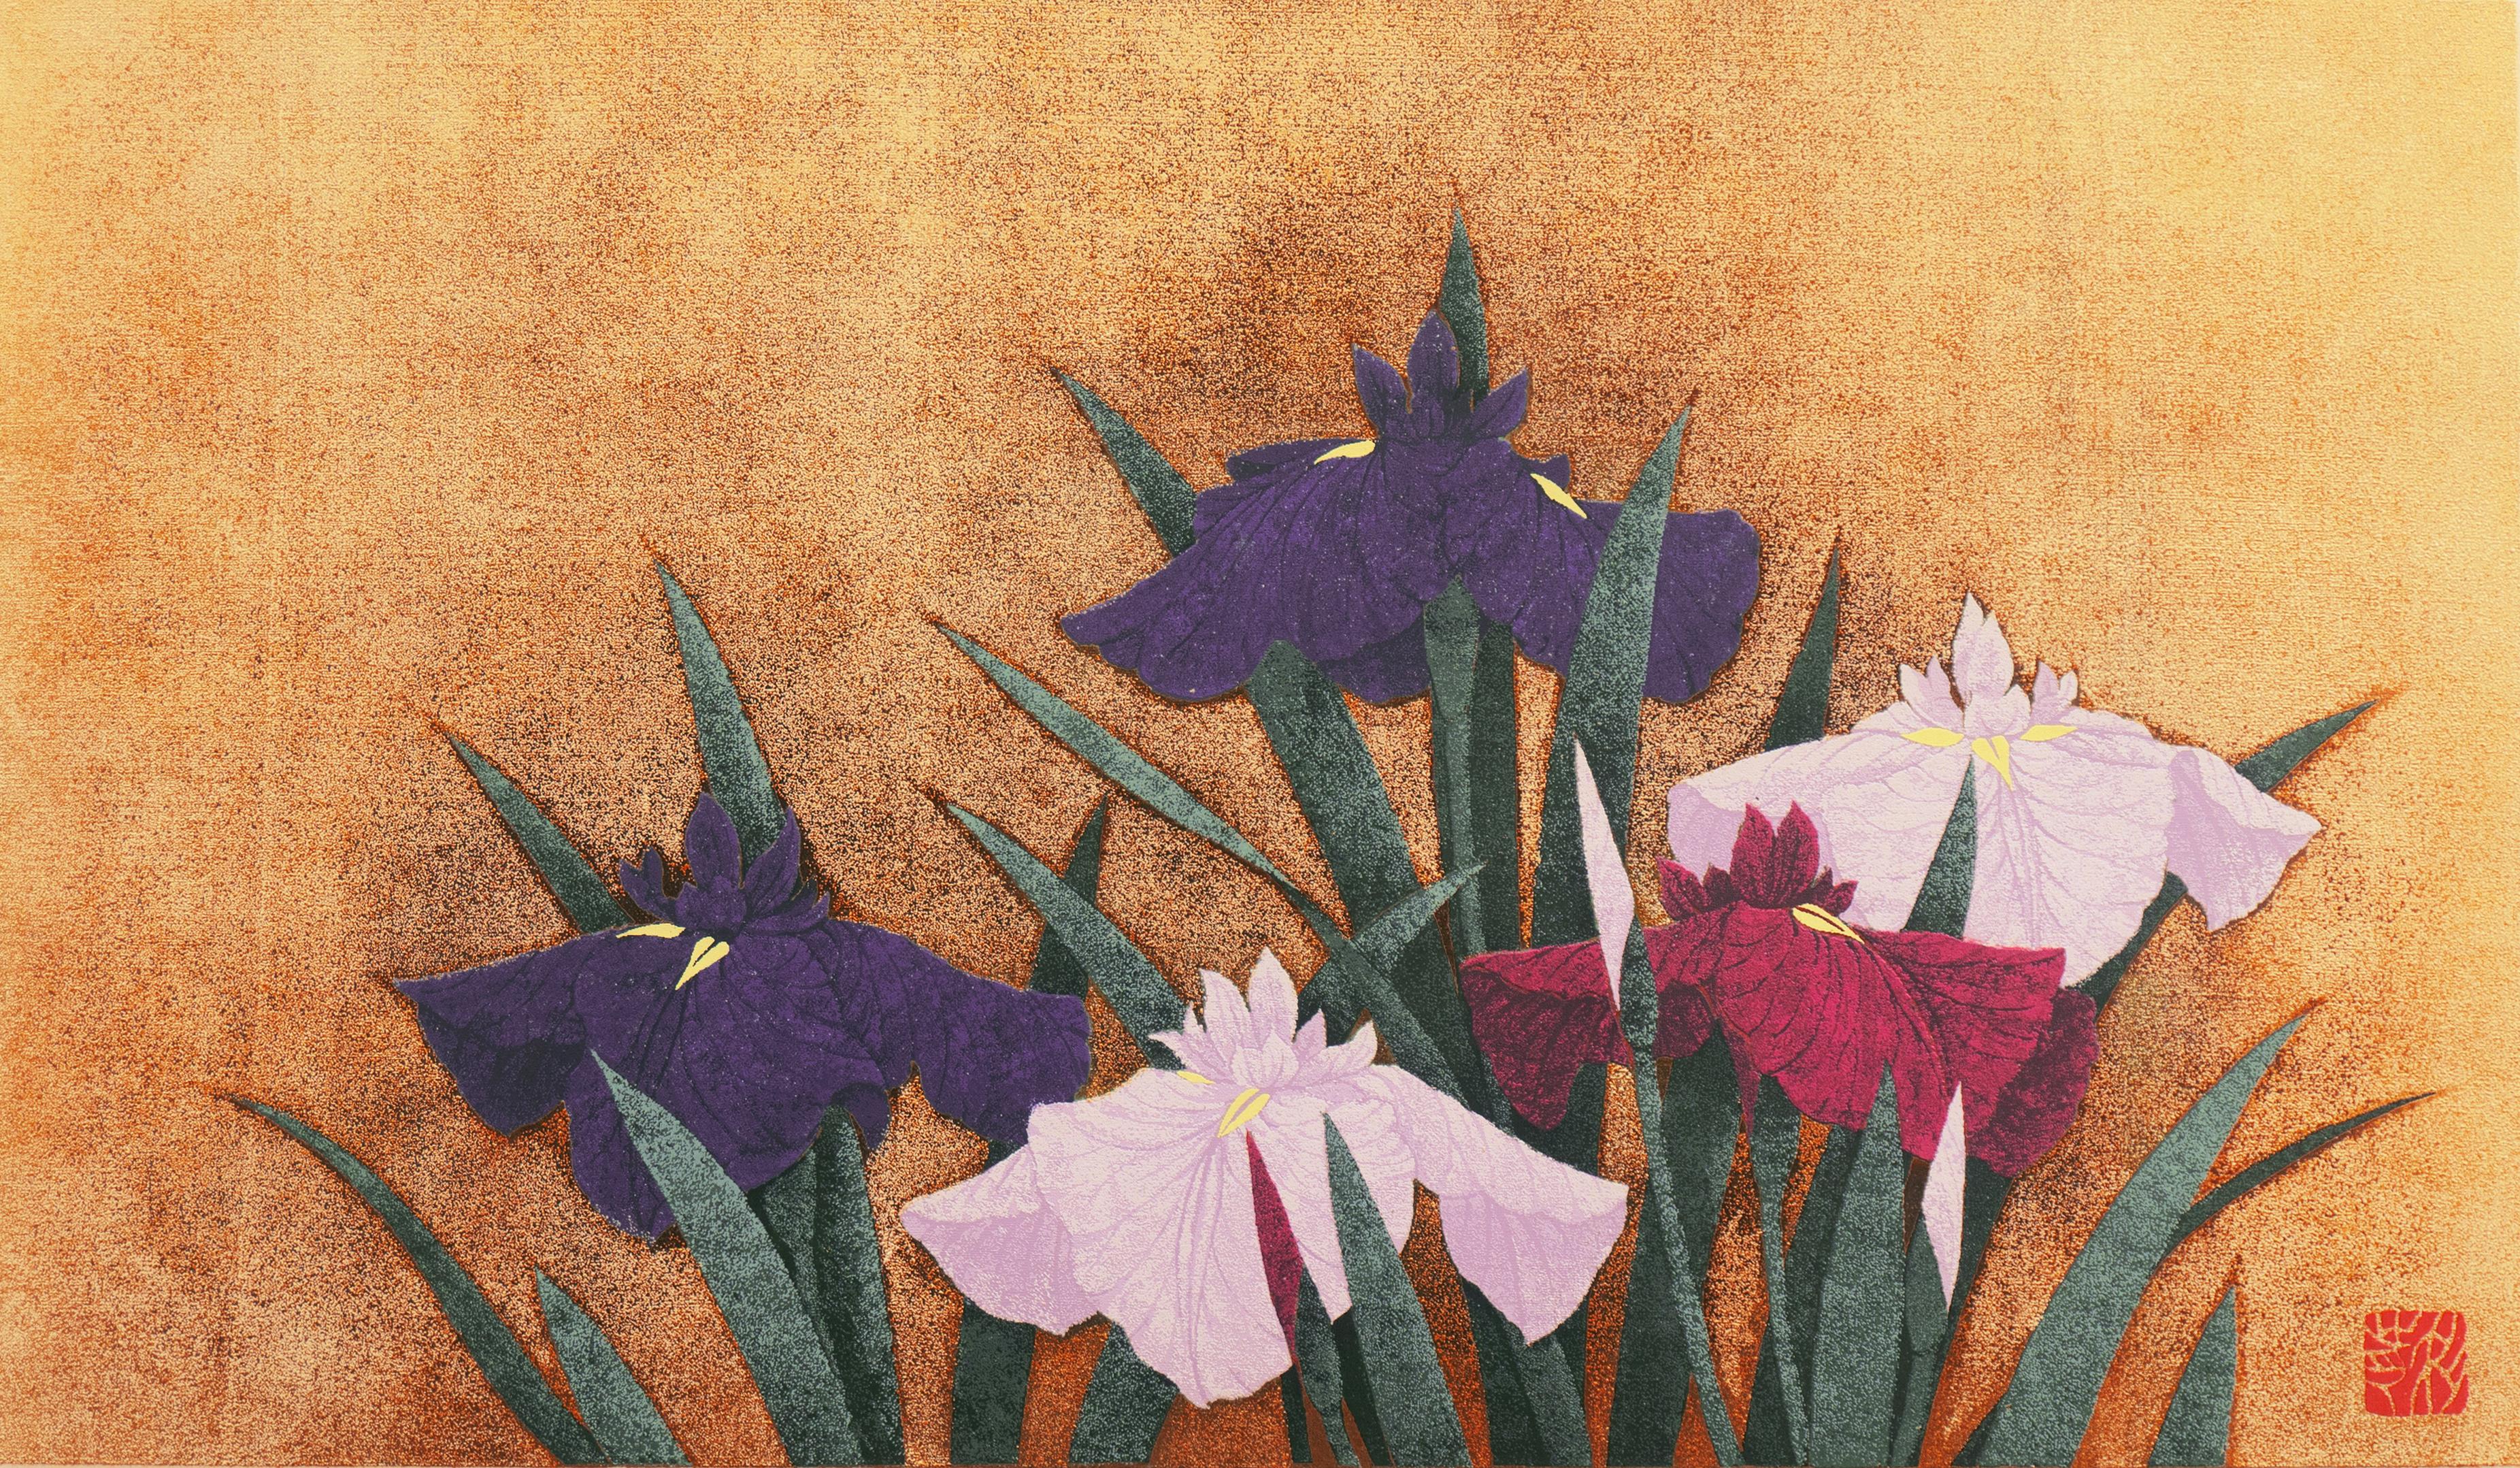 Kazutoshi Sugiura Still-Life Print - 'Irises, Indigo and Gold', Kyoto National Museum, Japanese Silk Screen, Nihonga